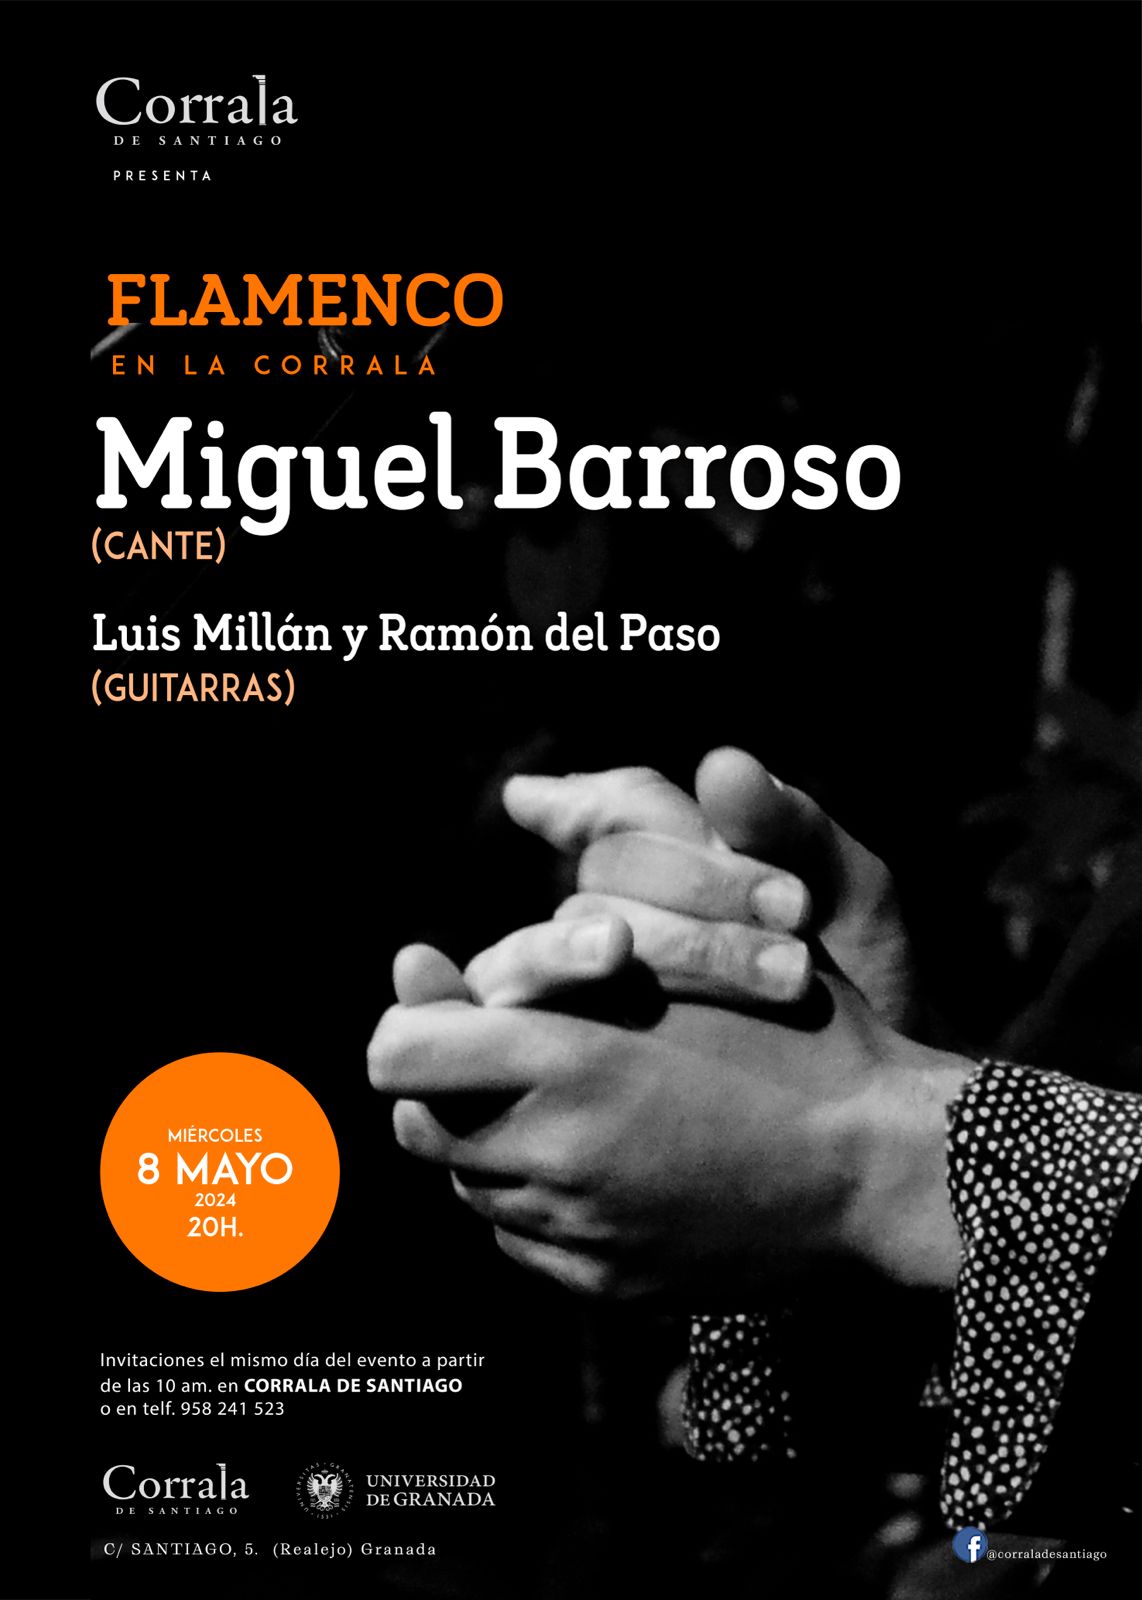 Las guitarras de Luis Millán y de Ramón del Paso acompañarán al cantaor Miguel Barroso el miércoles 8 de mayo, a las 20h.